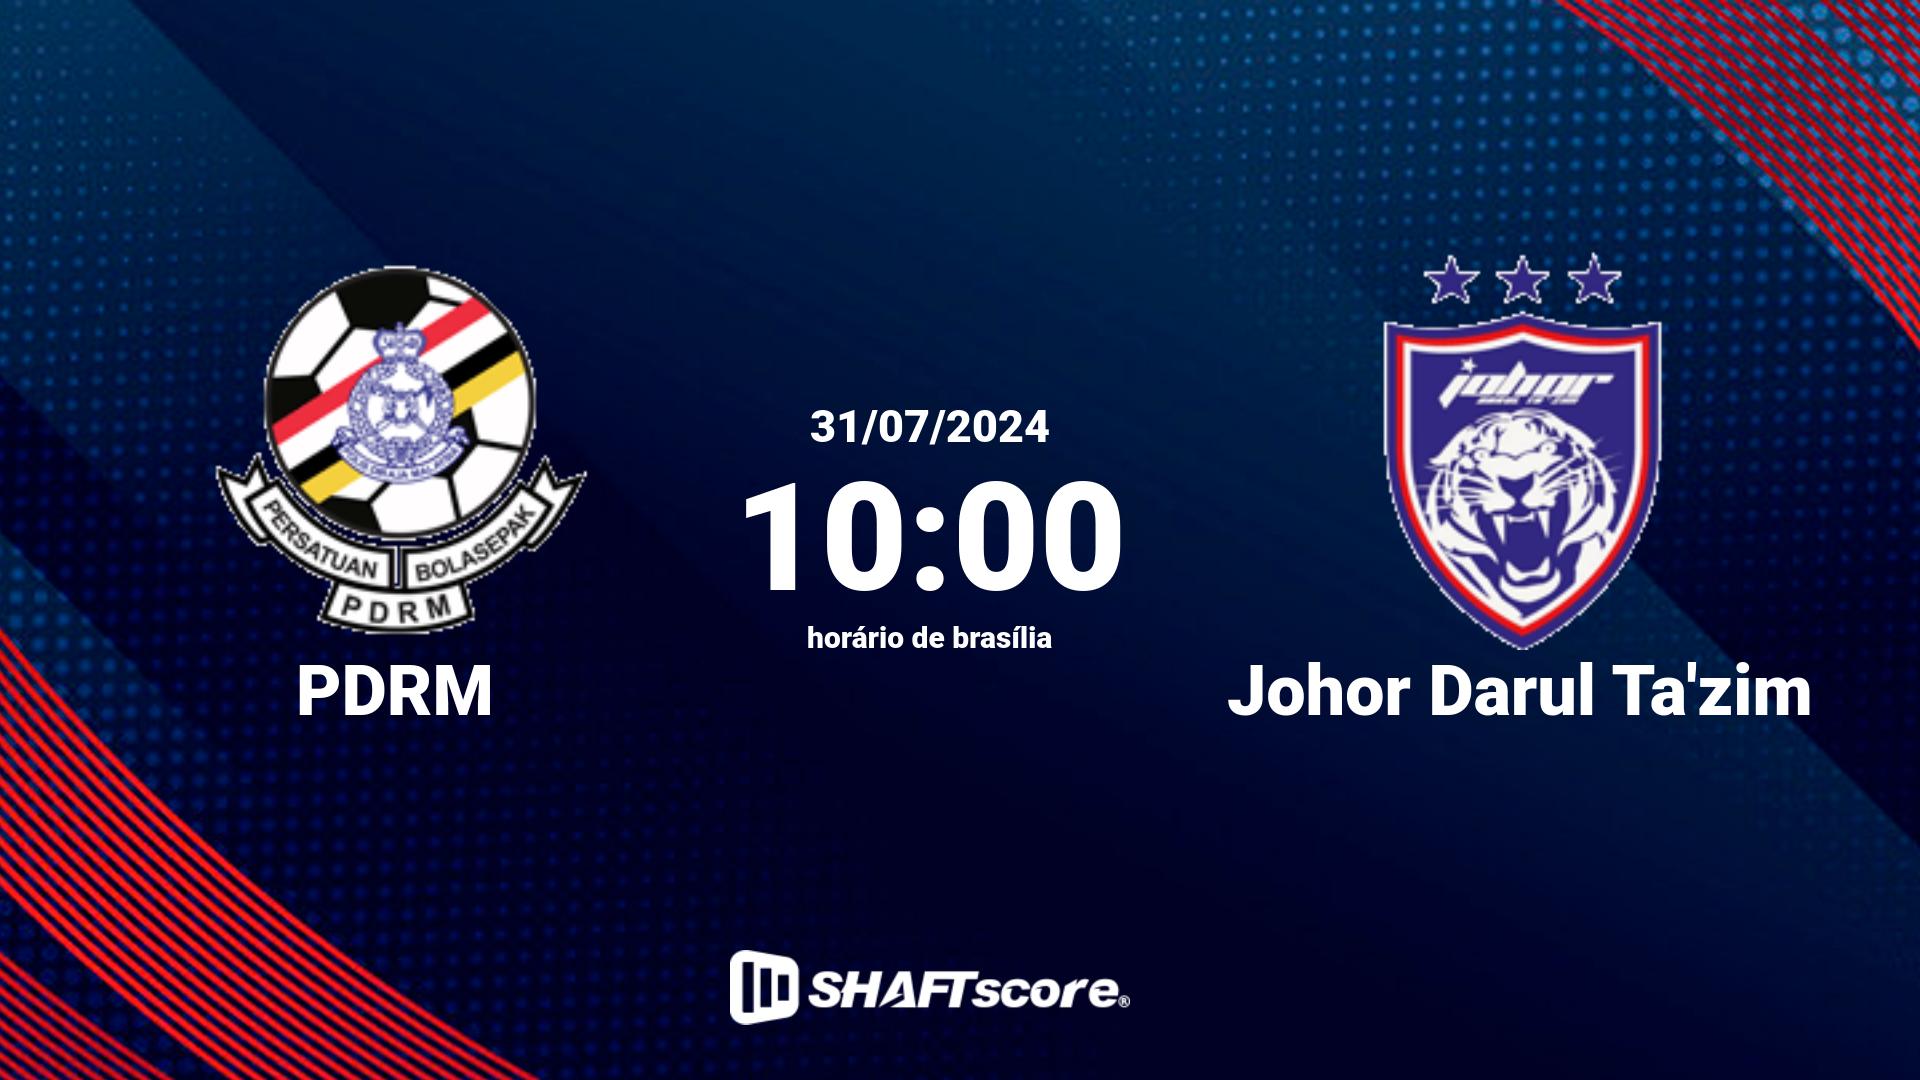 Estatísticas do jogo PDRM vs Johor Darul Ta'zim 31.07 10:00